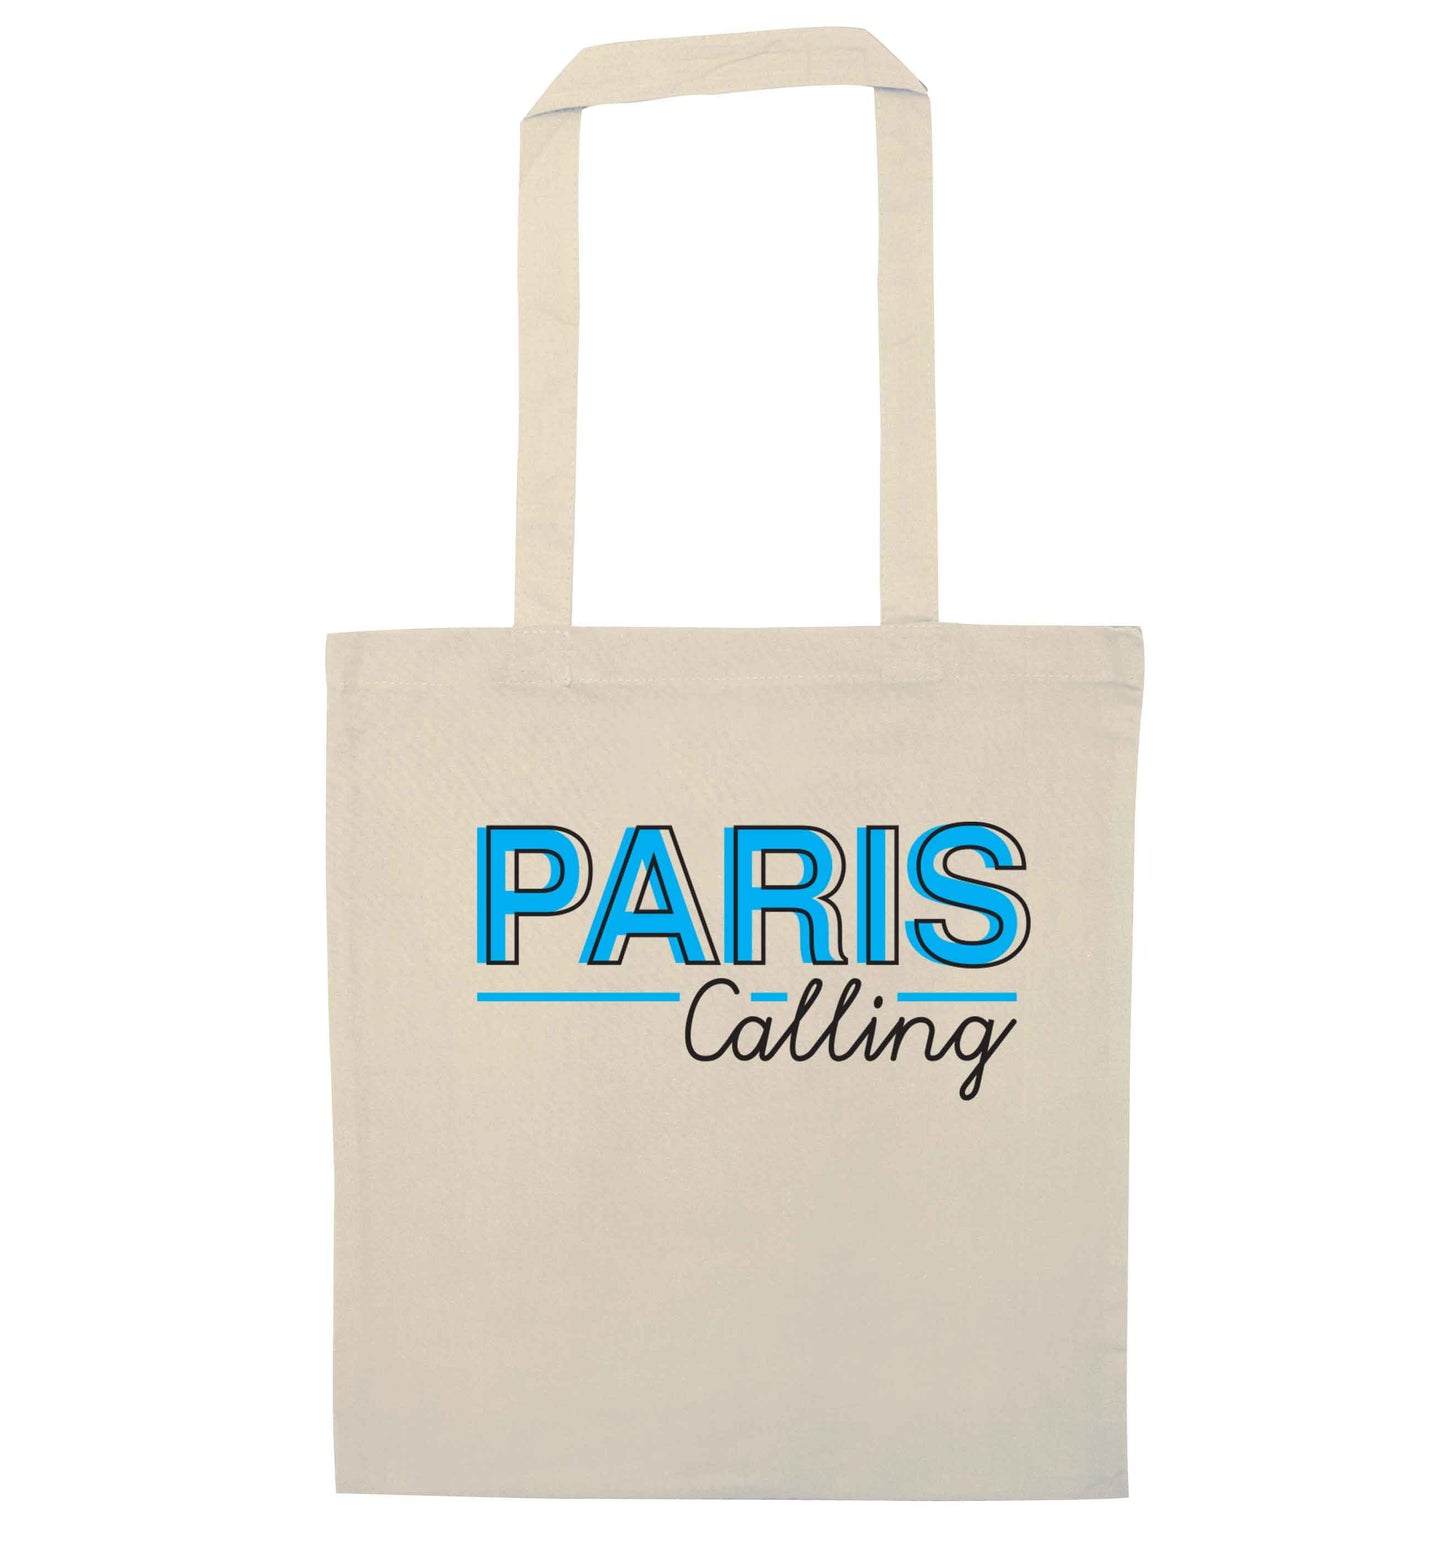 Paris calling natural tote bag